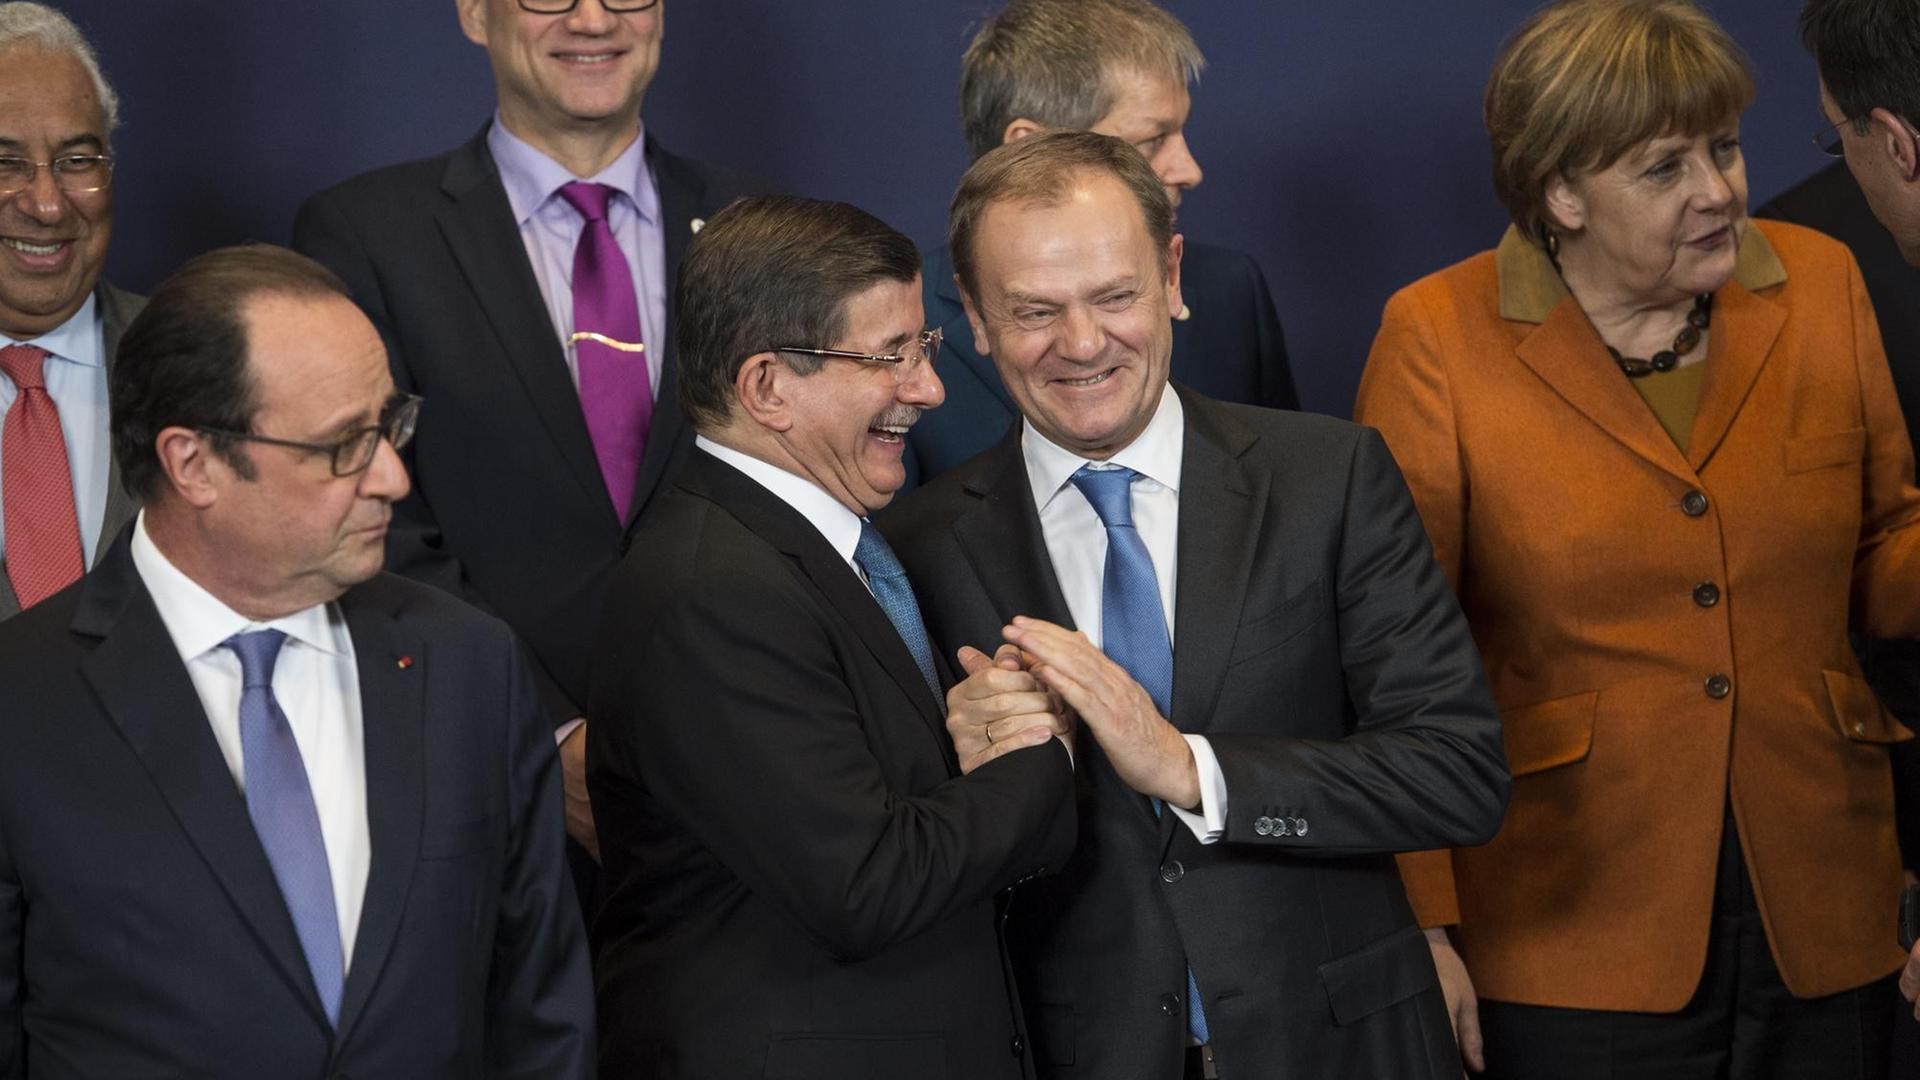 François Hollande, Ahmed Davutoglu, Donald Tusk und Angela Merkel unterhalten sich beim Aufstellen zum Gruppenfoto.